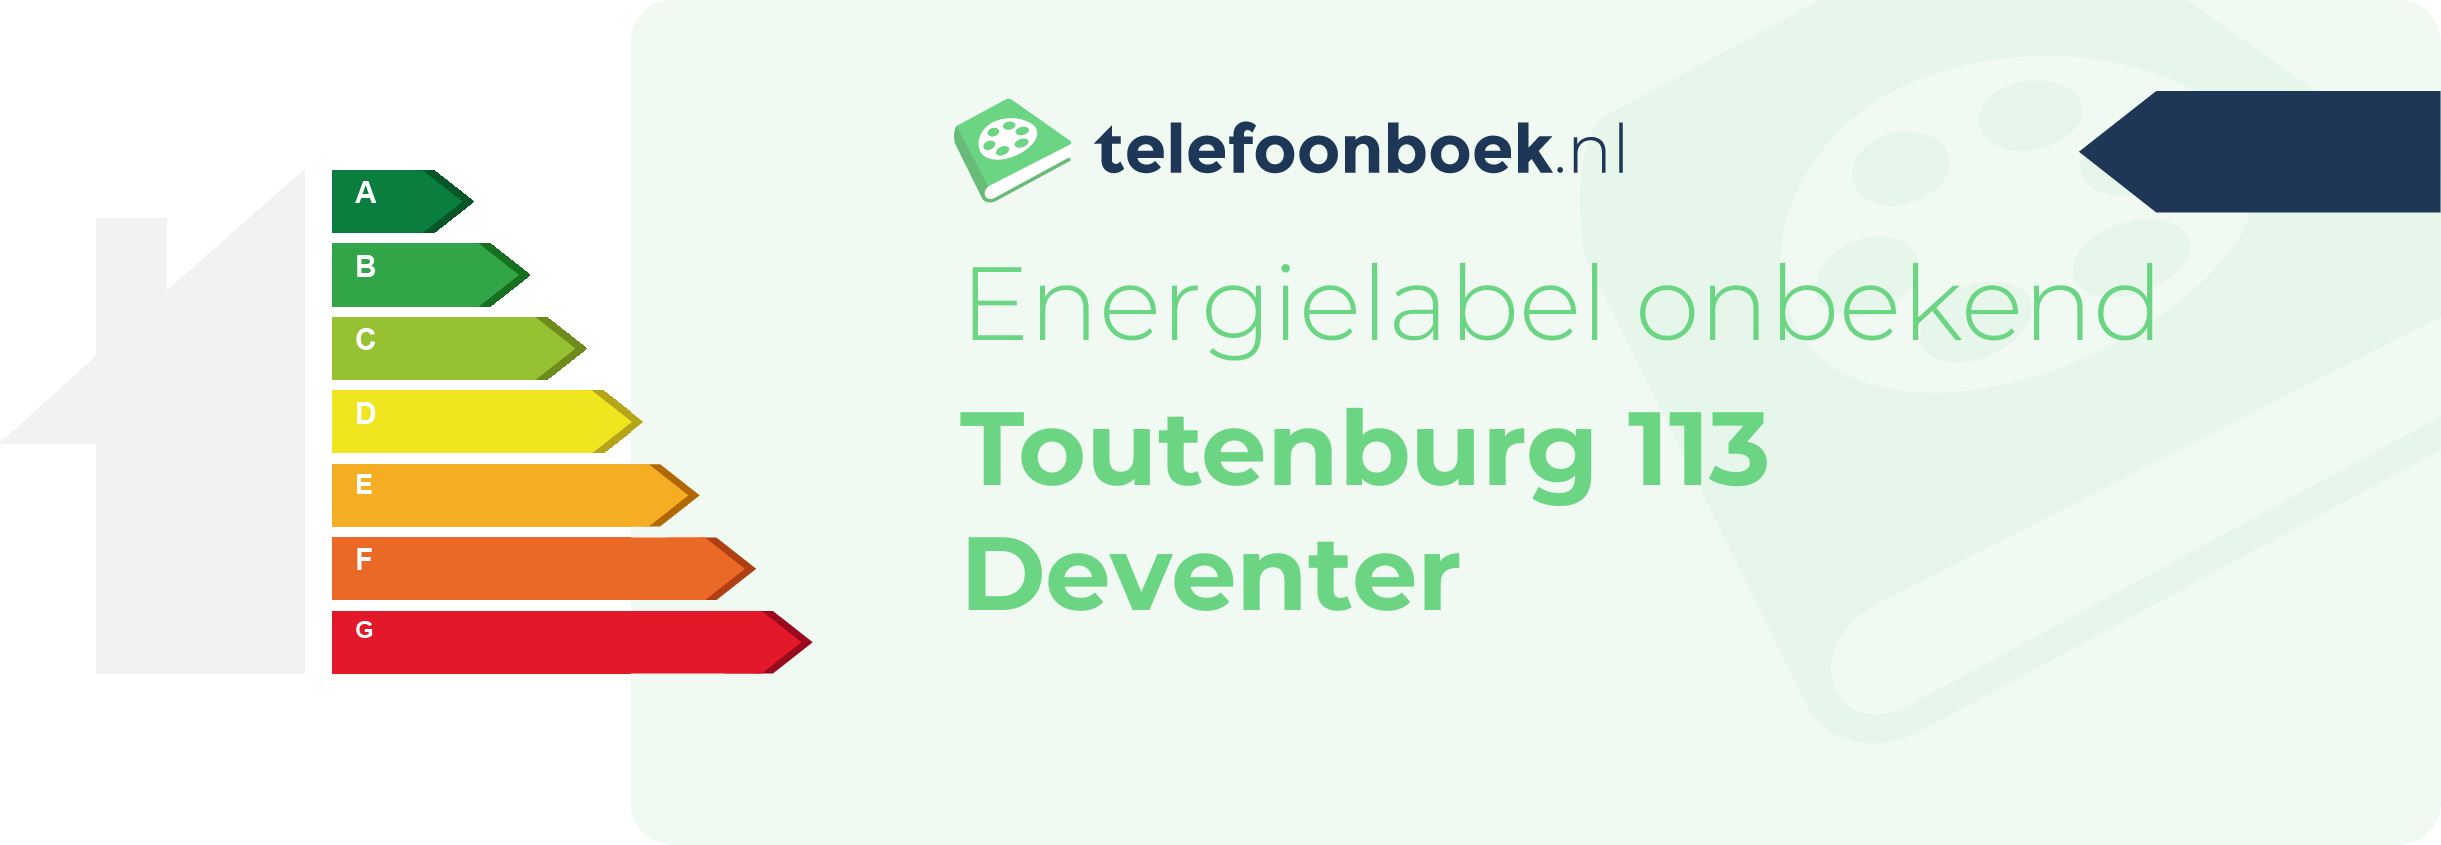 Energielabel Toutenburg 113 Deventer